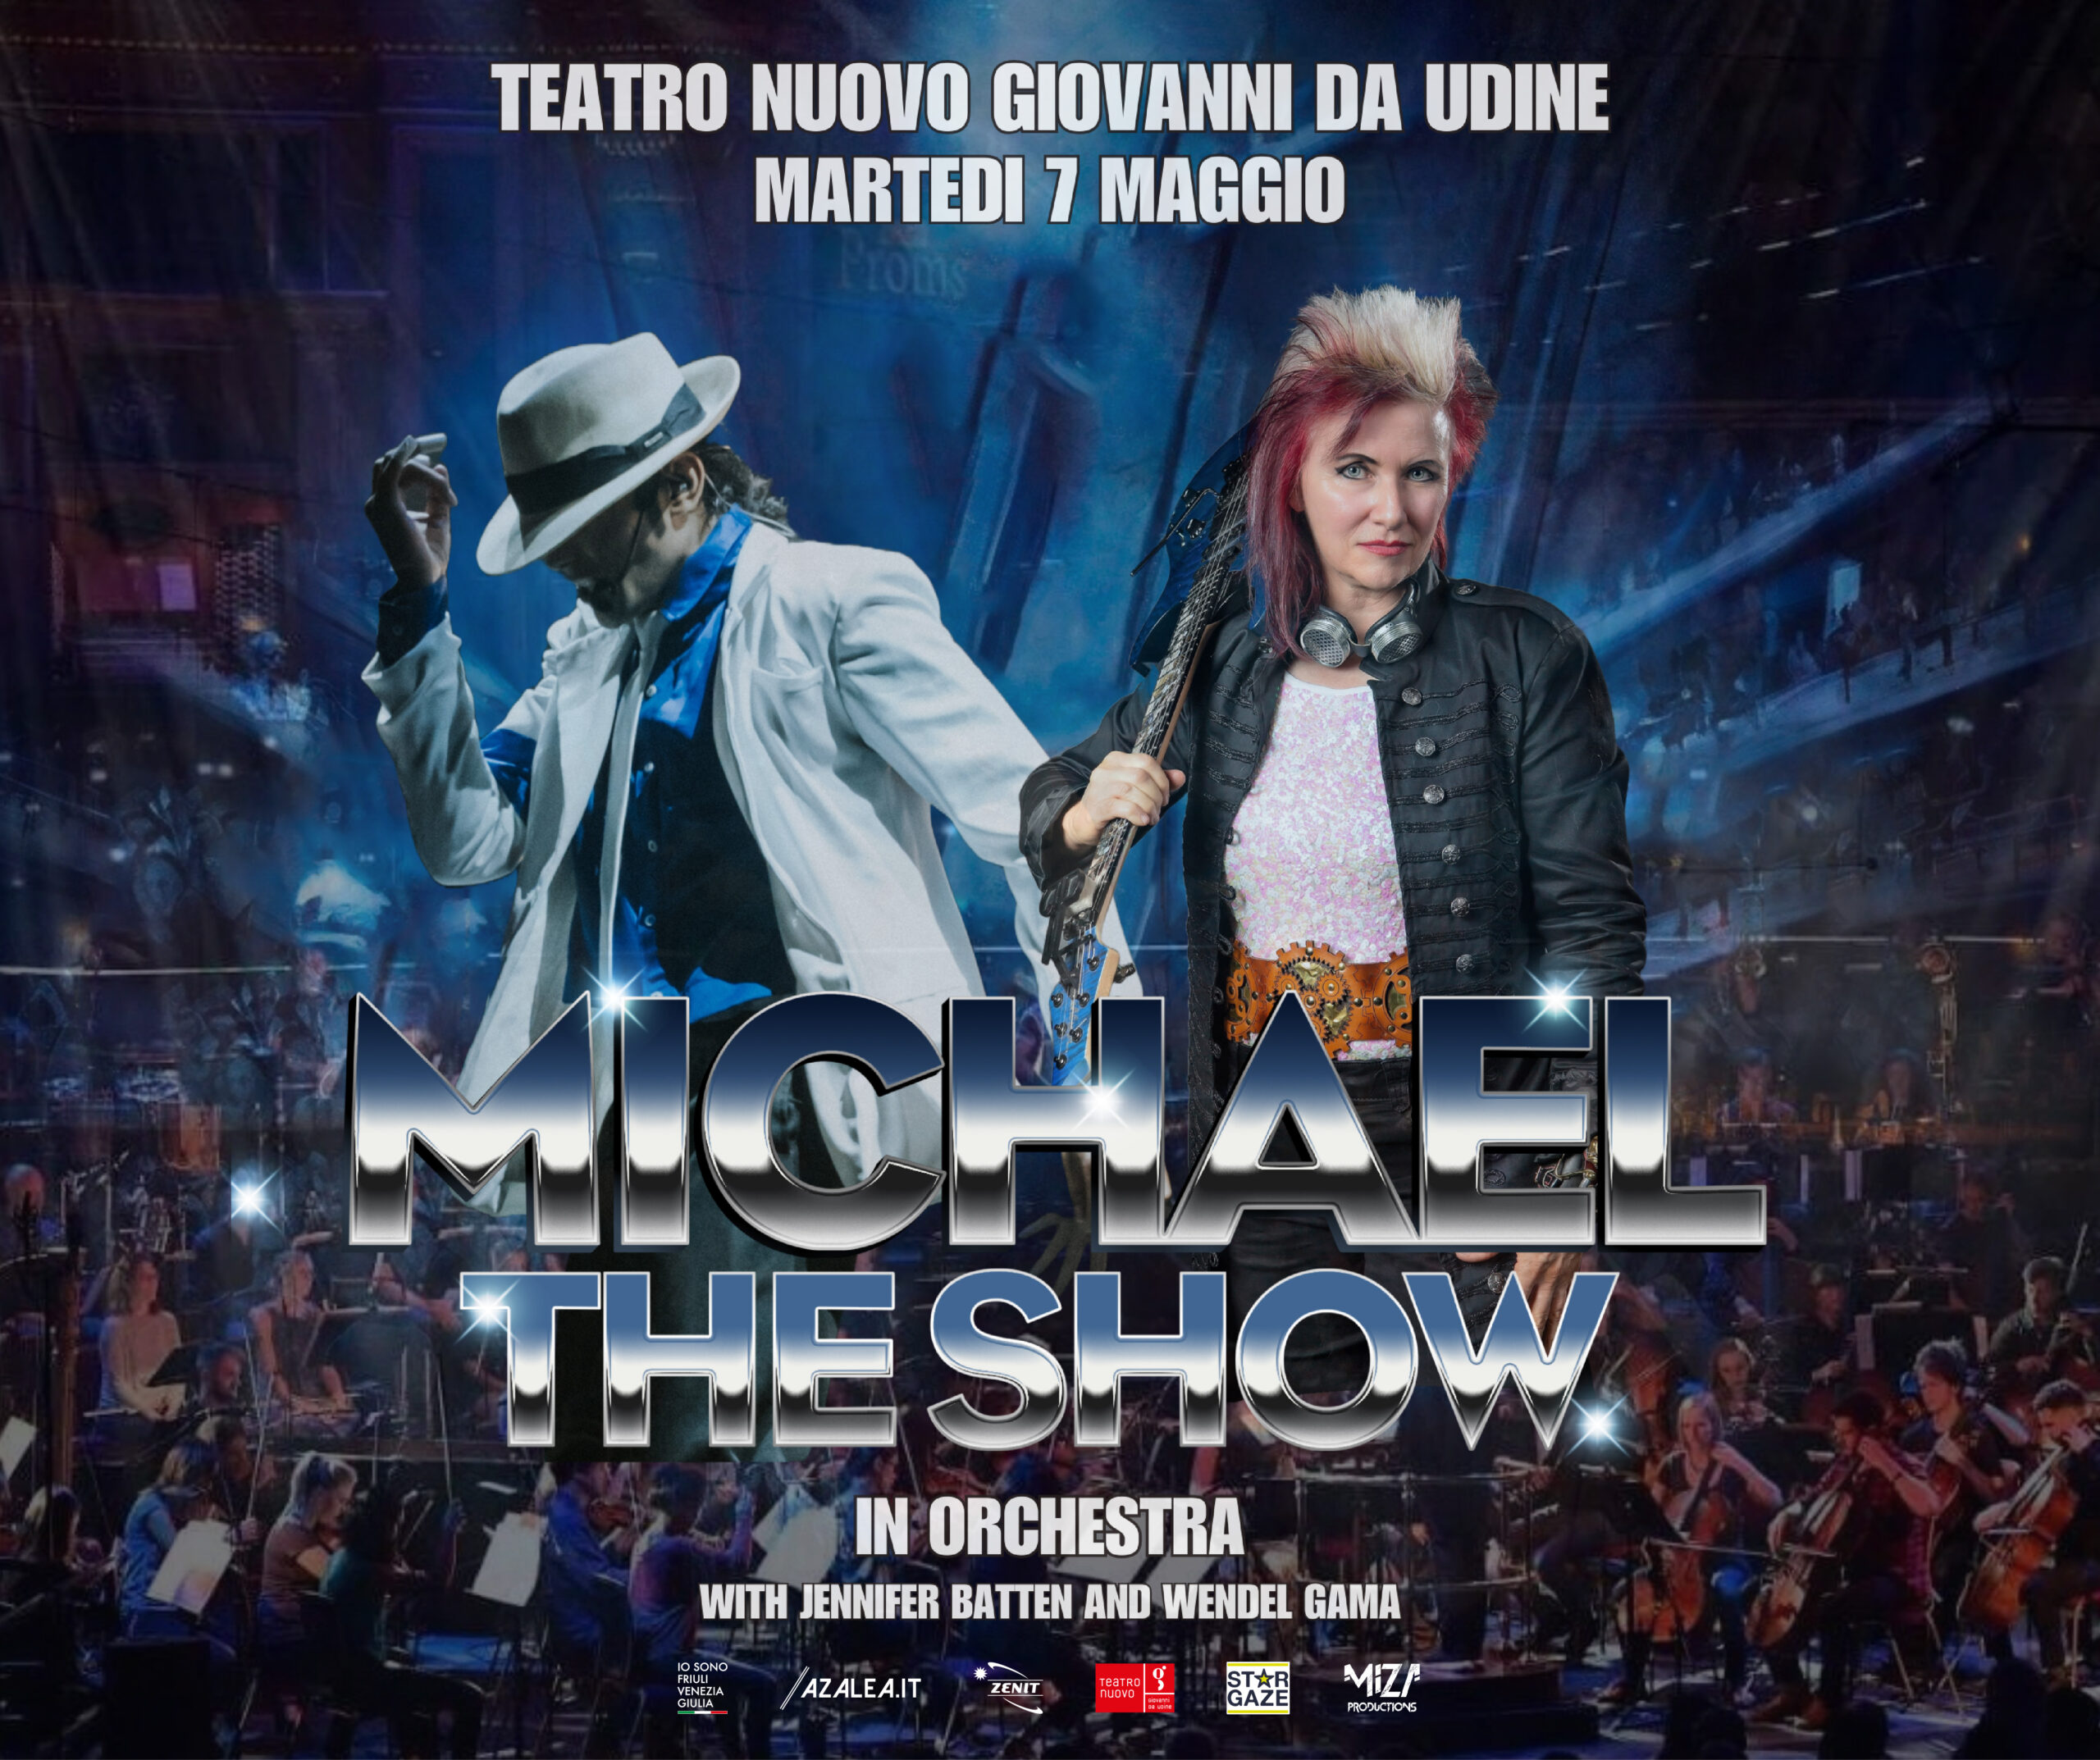 Michael The Show, 7 maggio a Udine